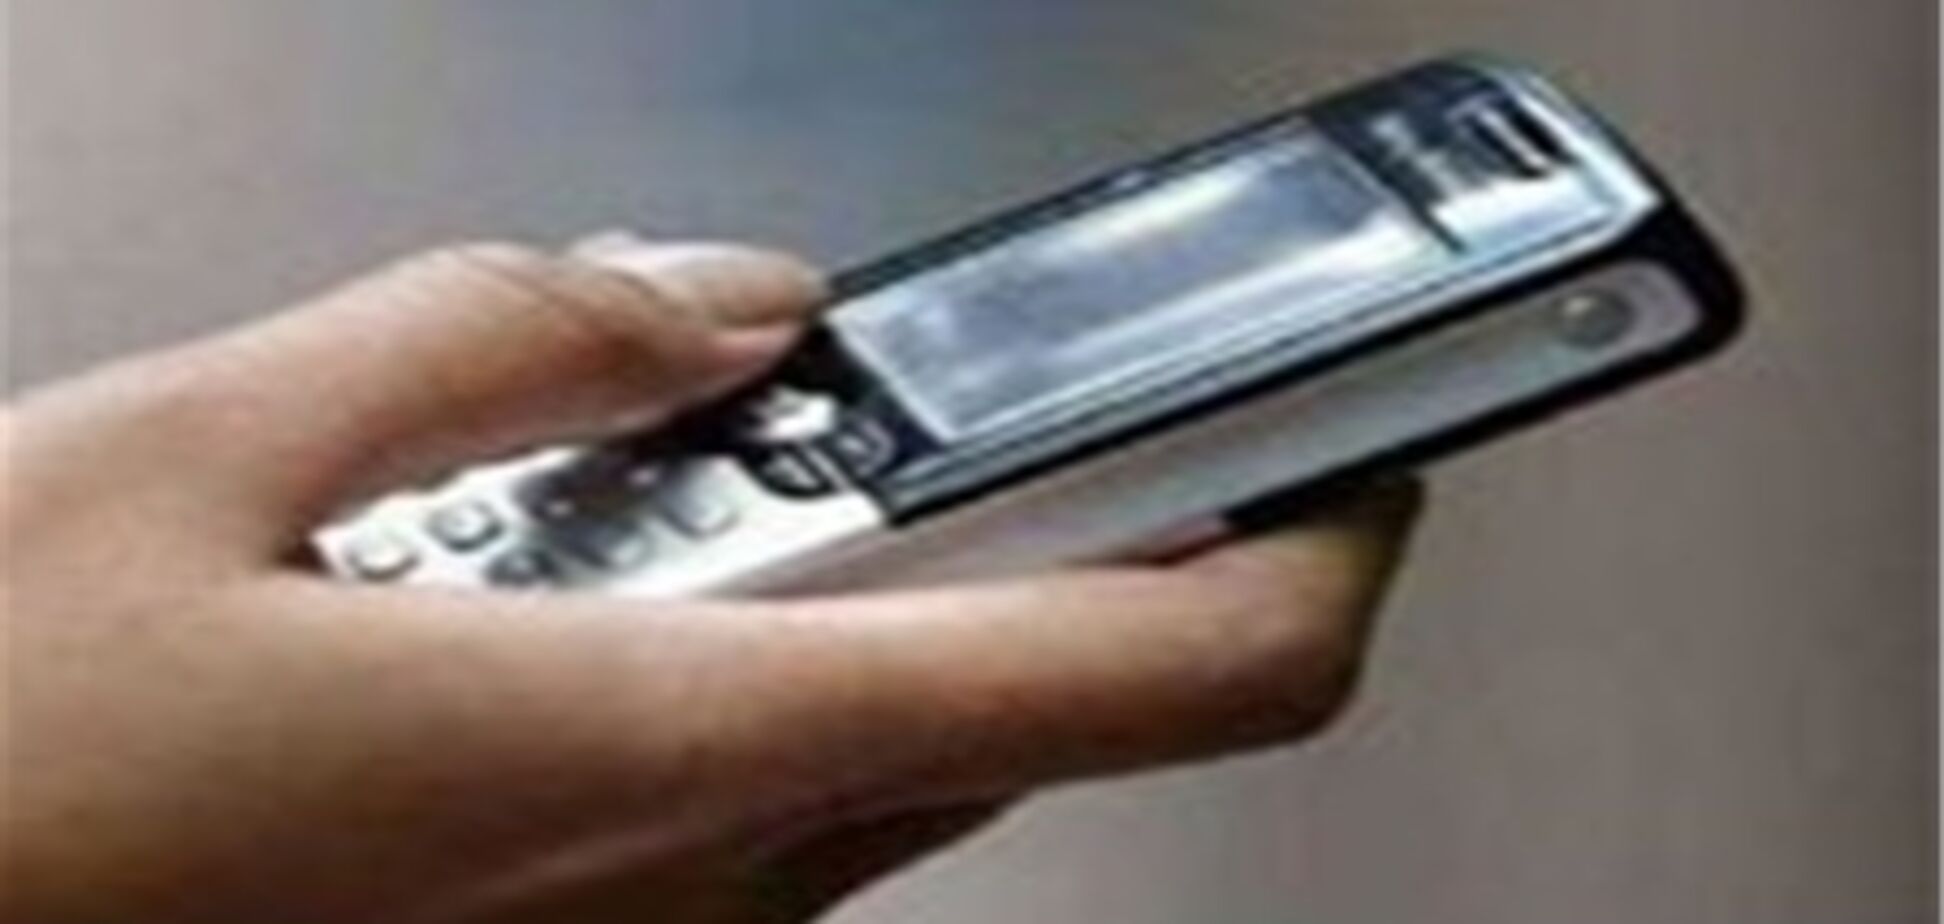 НКРС ввела новый порядок ввоза и реализации мобильных телефонов